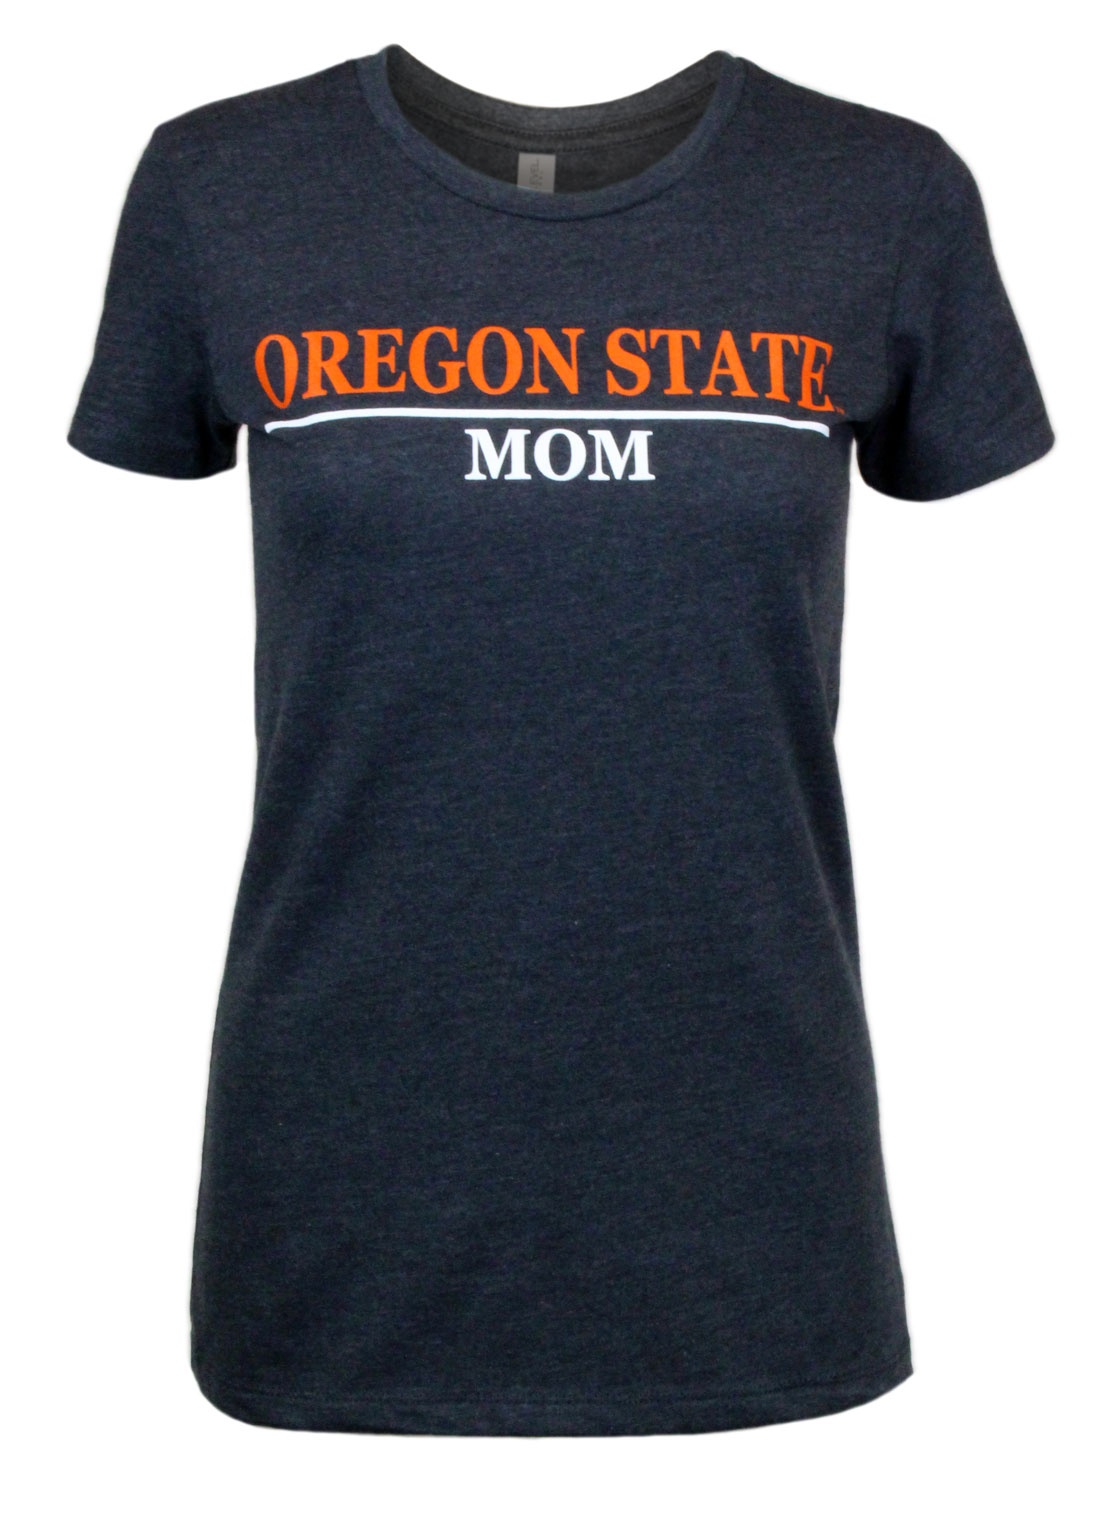 OSU Beaver Store Women's Charcoal Oregon State Mom Tee